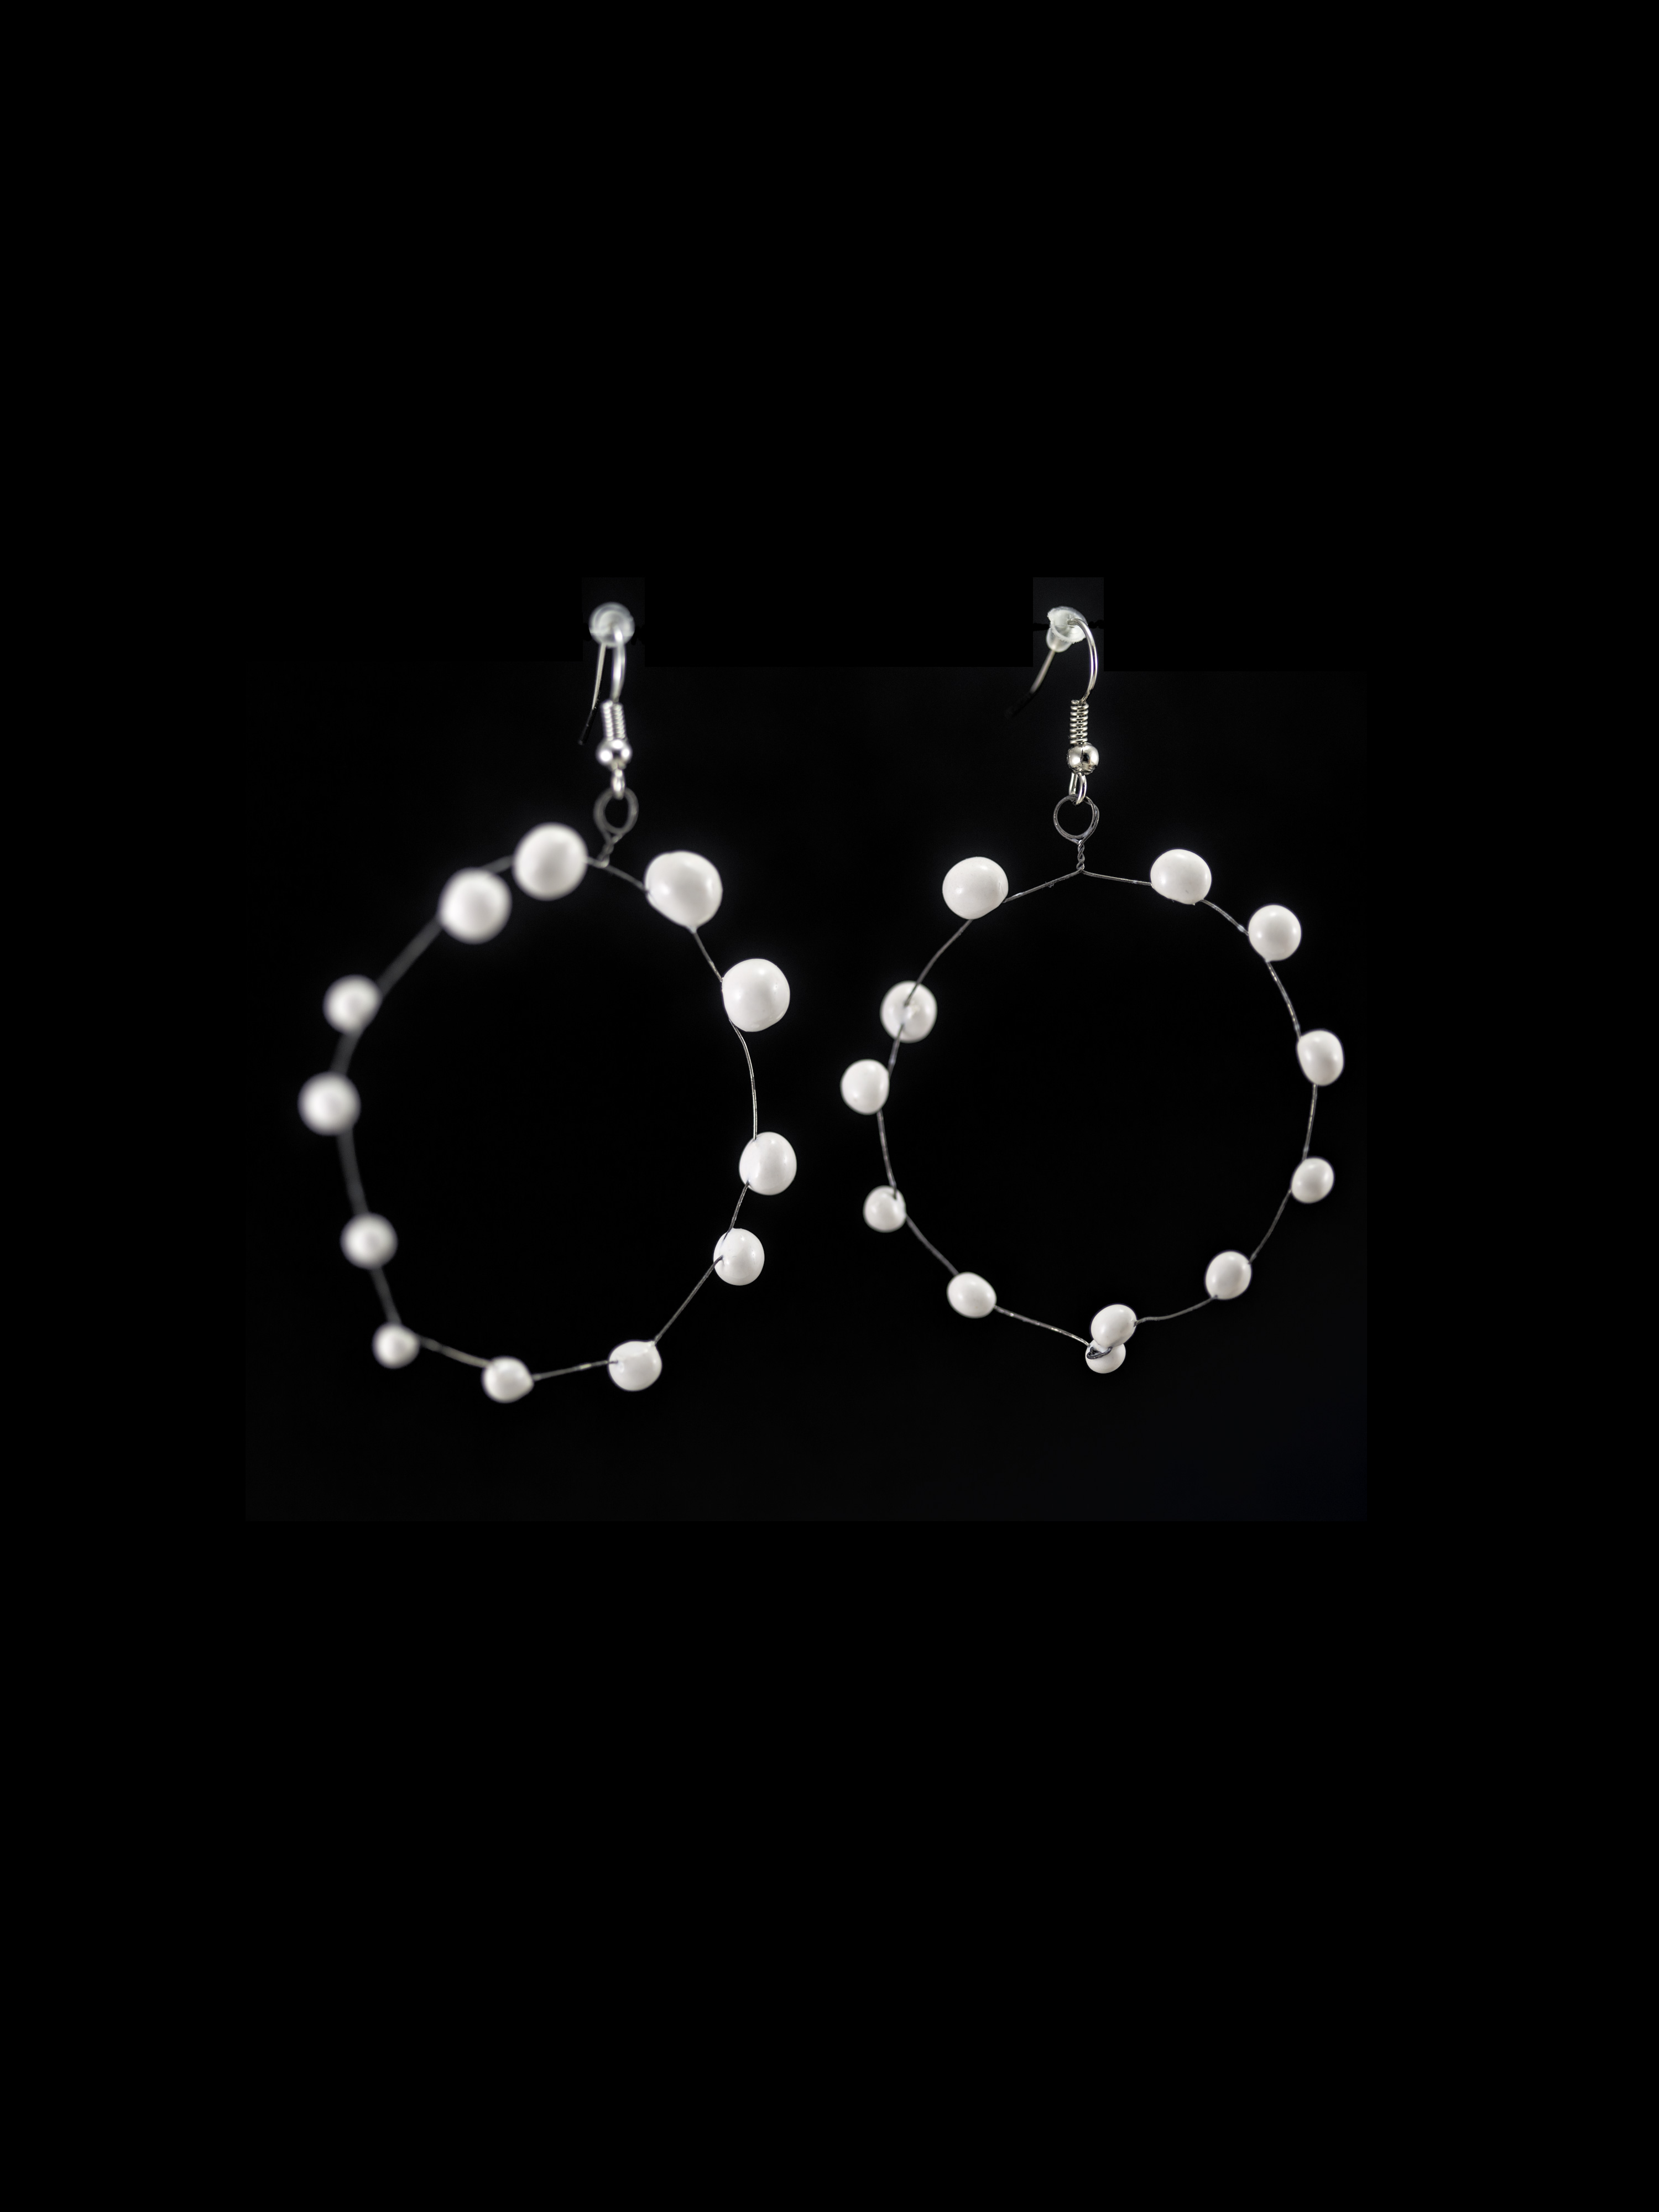 Coppia di orecchini a cerchio in ceramica e metallo, leggerissimi. Colore bianco su sfondo nero.